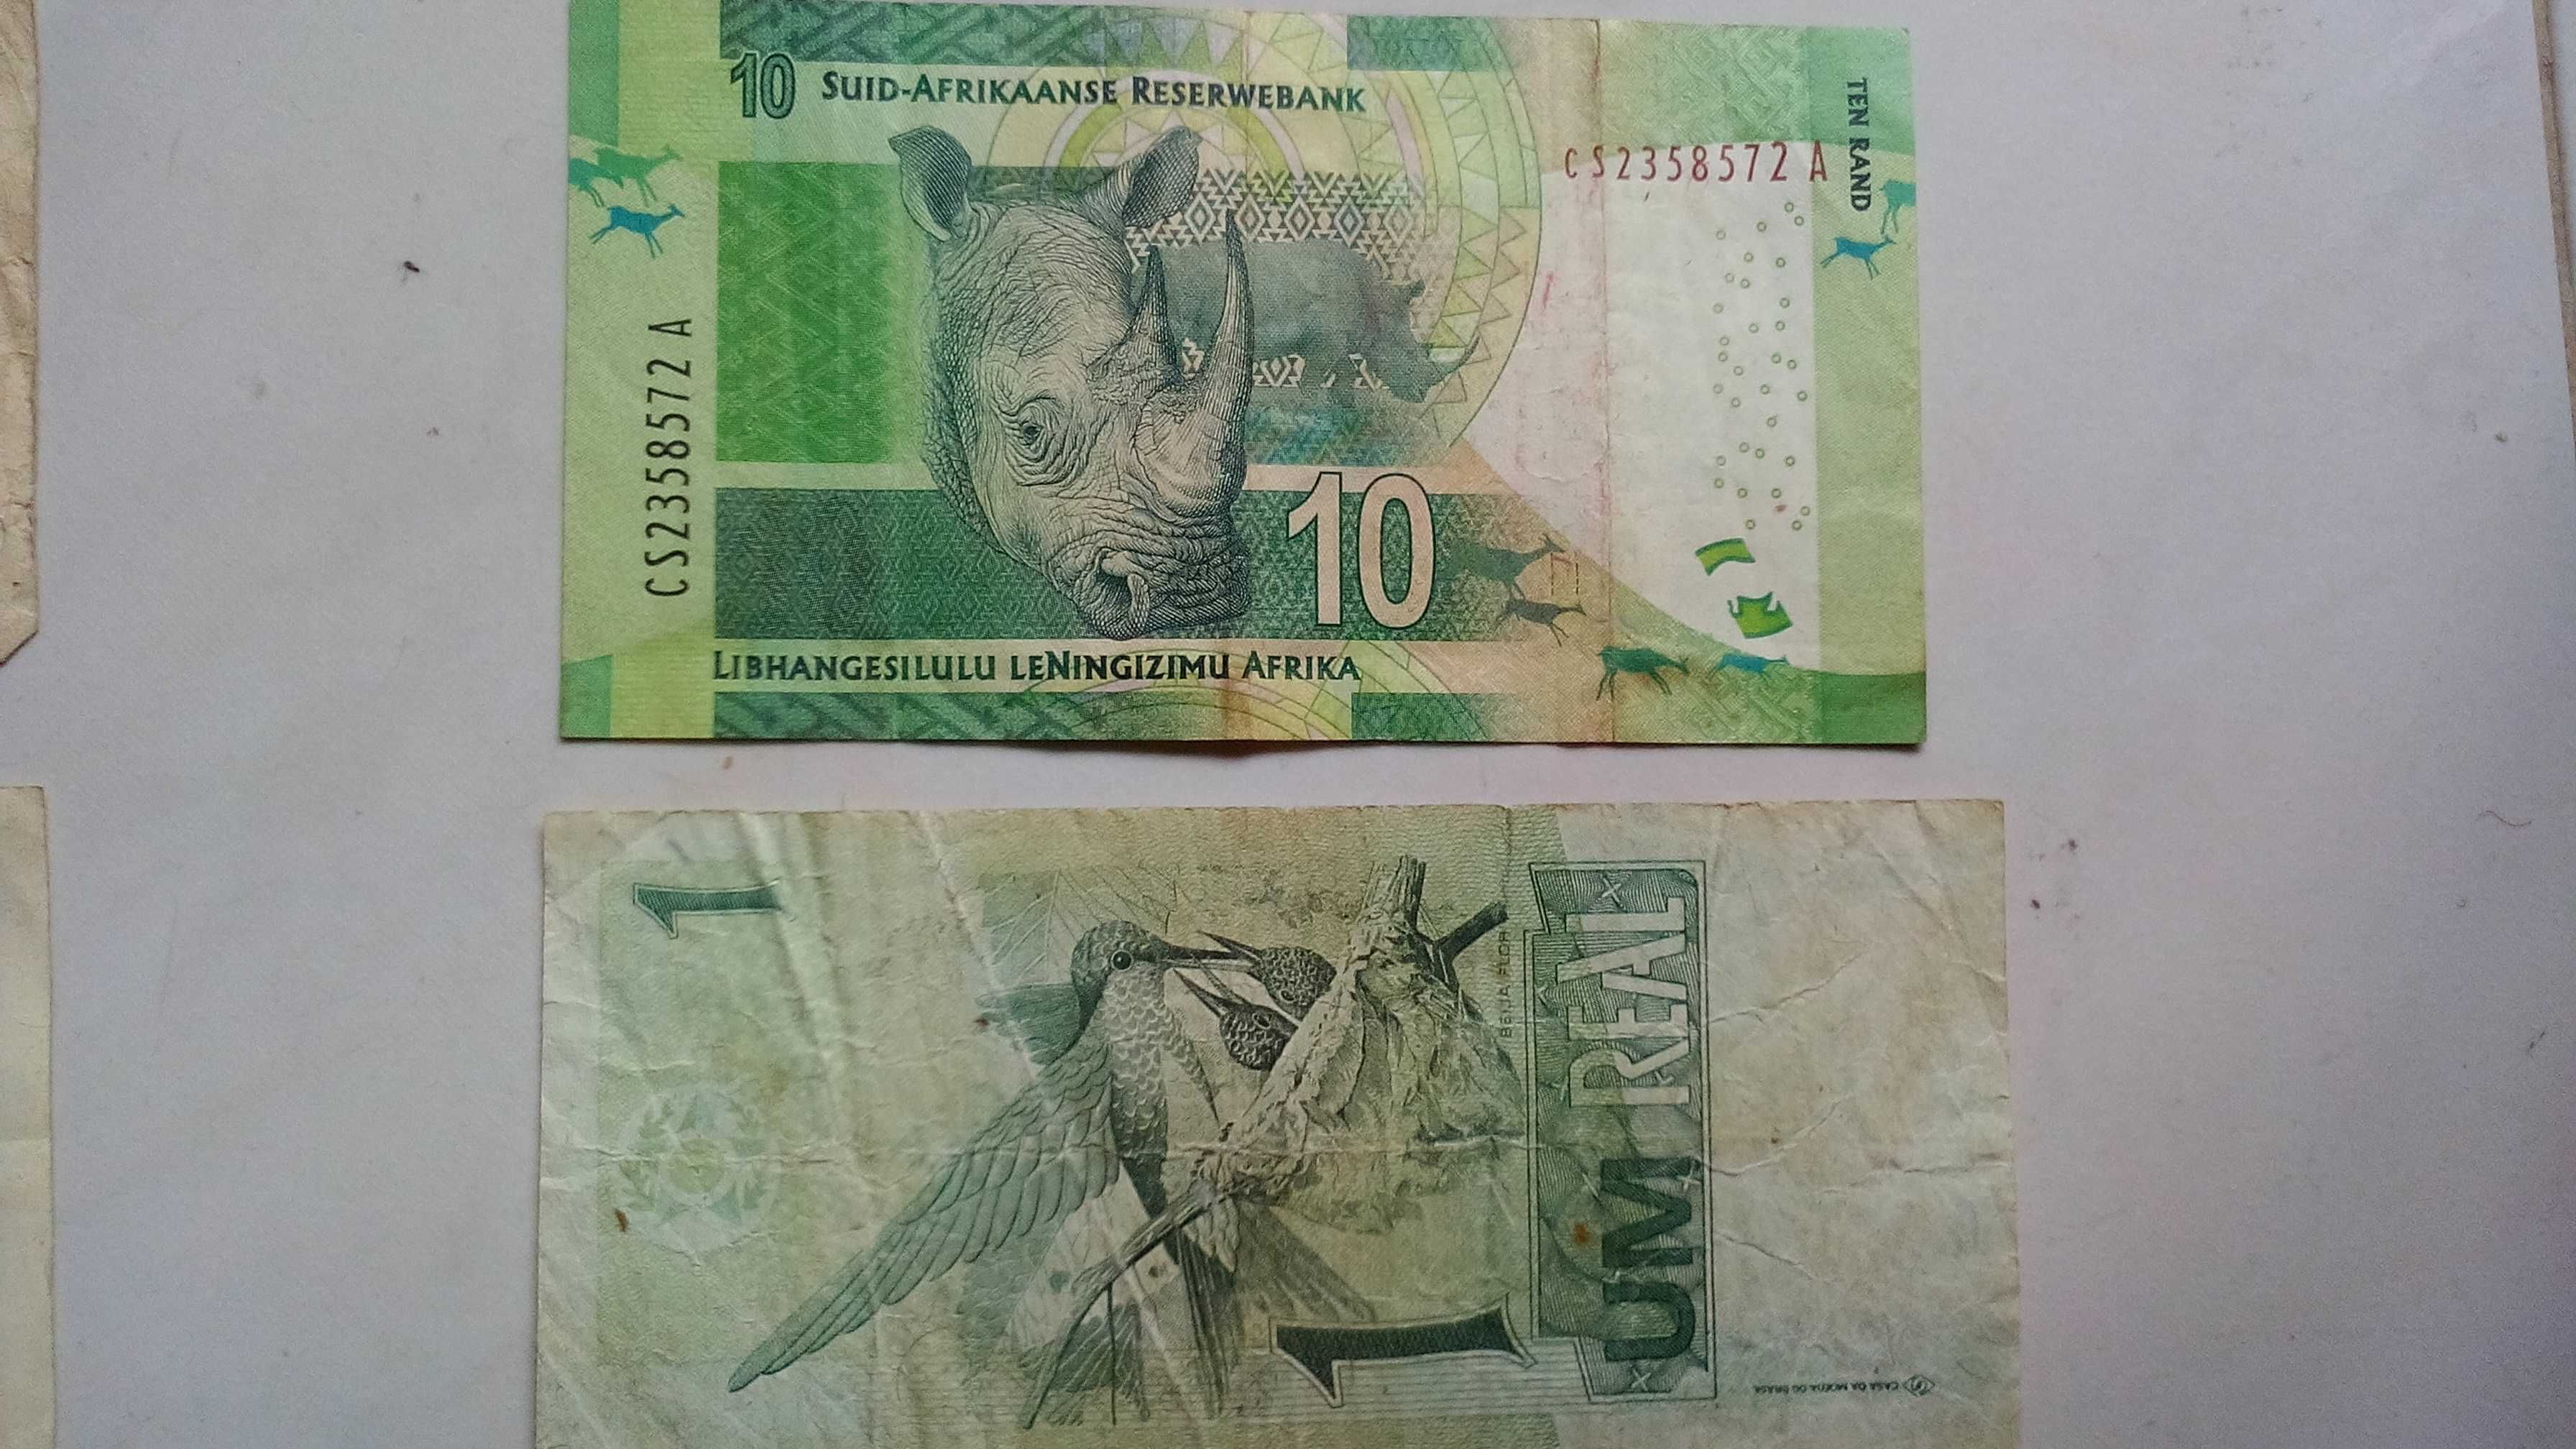 Notas 5 Pesos Argentinos 10 rand Sul Africa Escudos